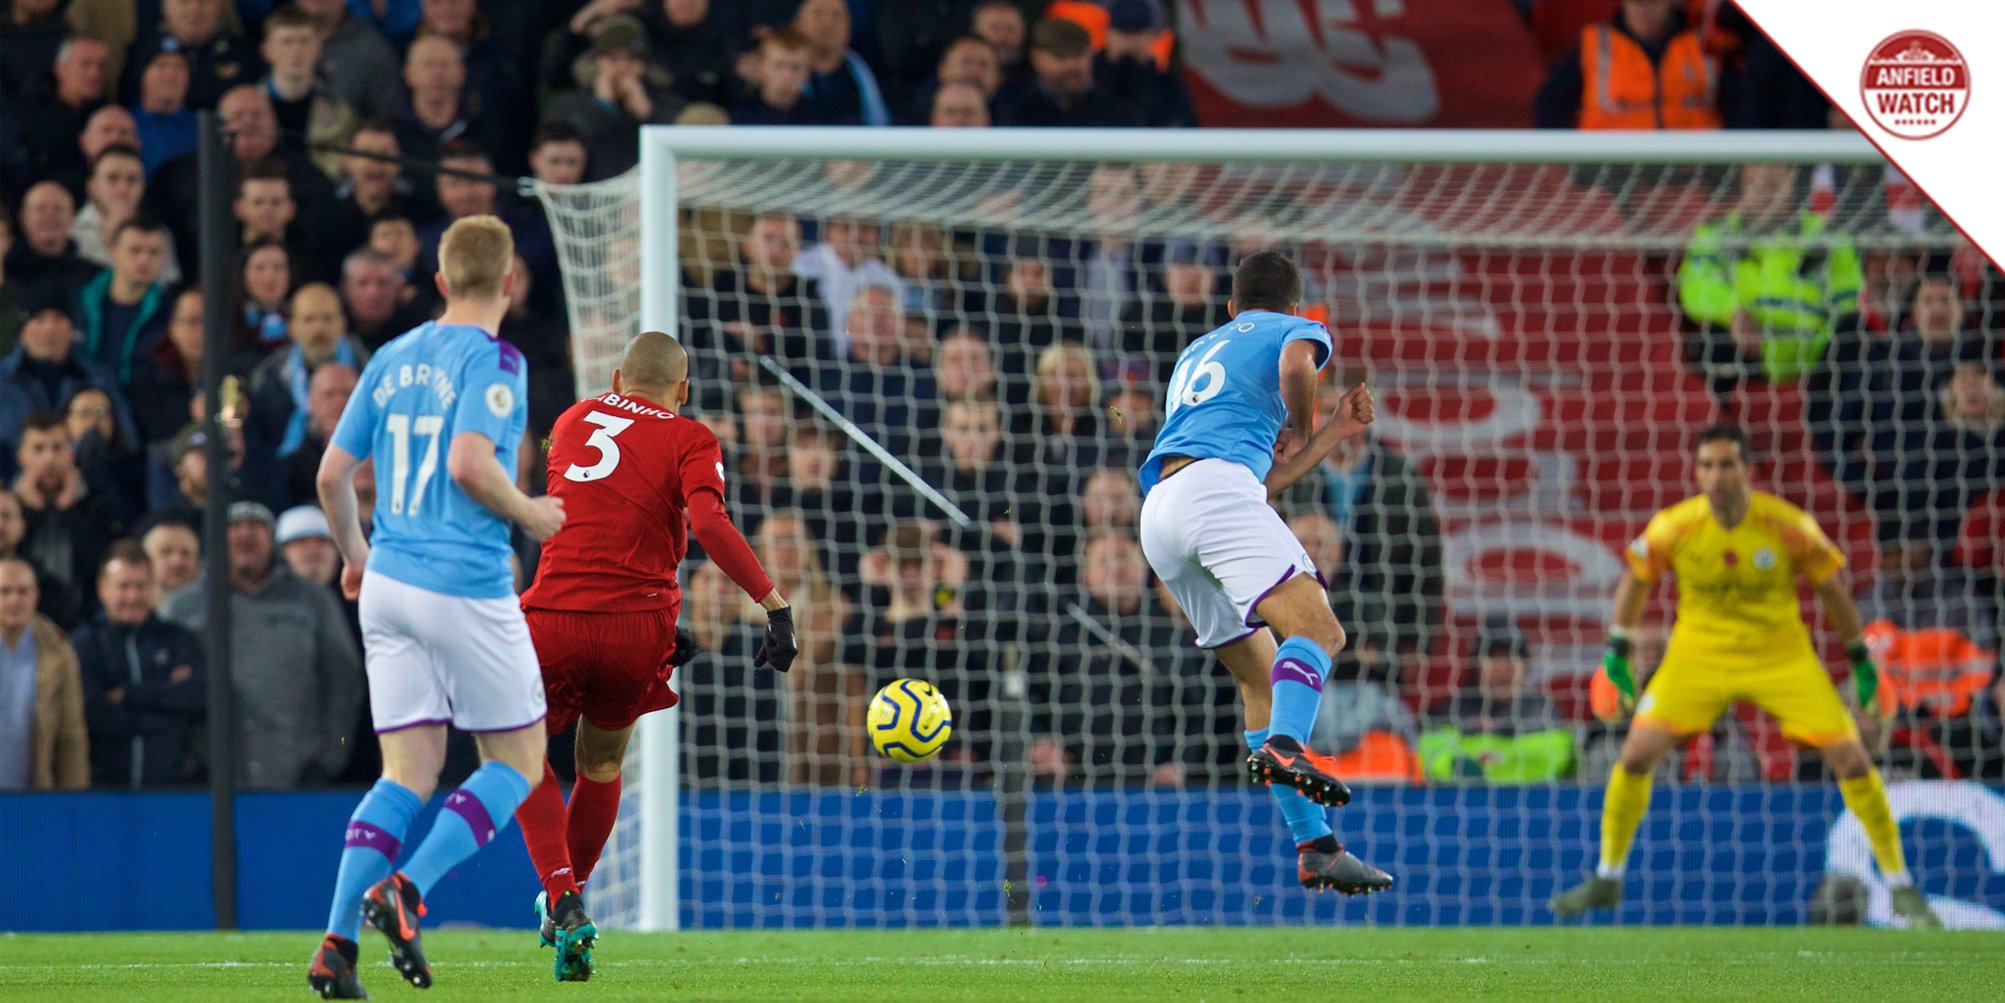 TRỰC TIẾP Liverpool 1-0 Man City: Siêu phẩm mở tỷ số (H1) - Bóng Đá